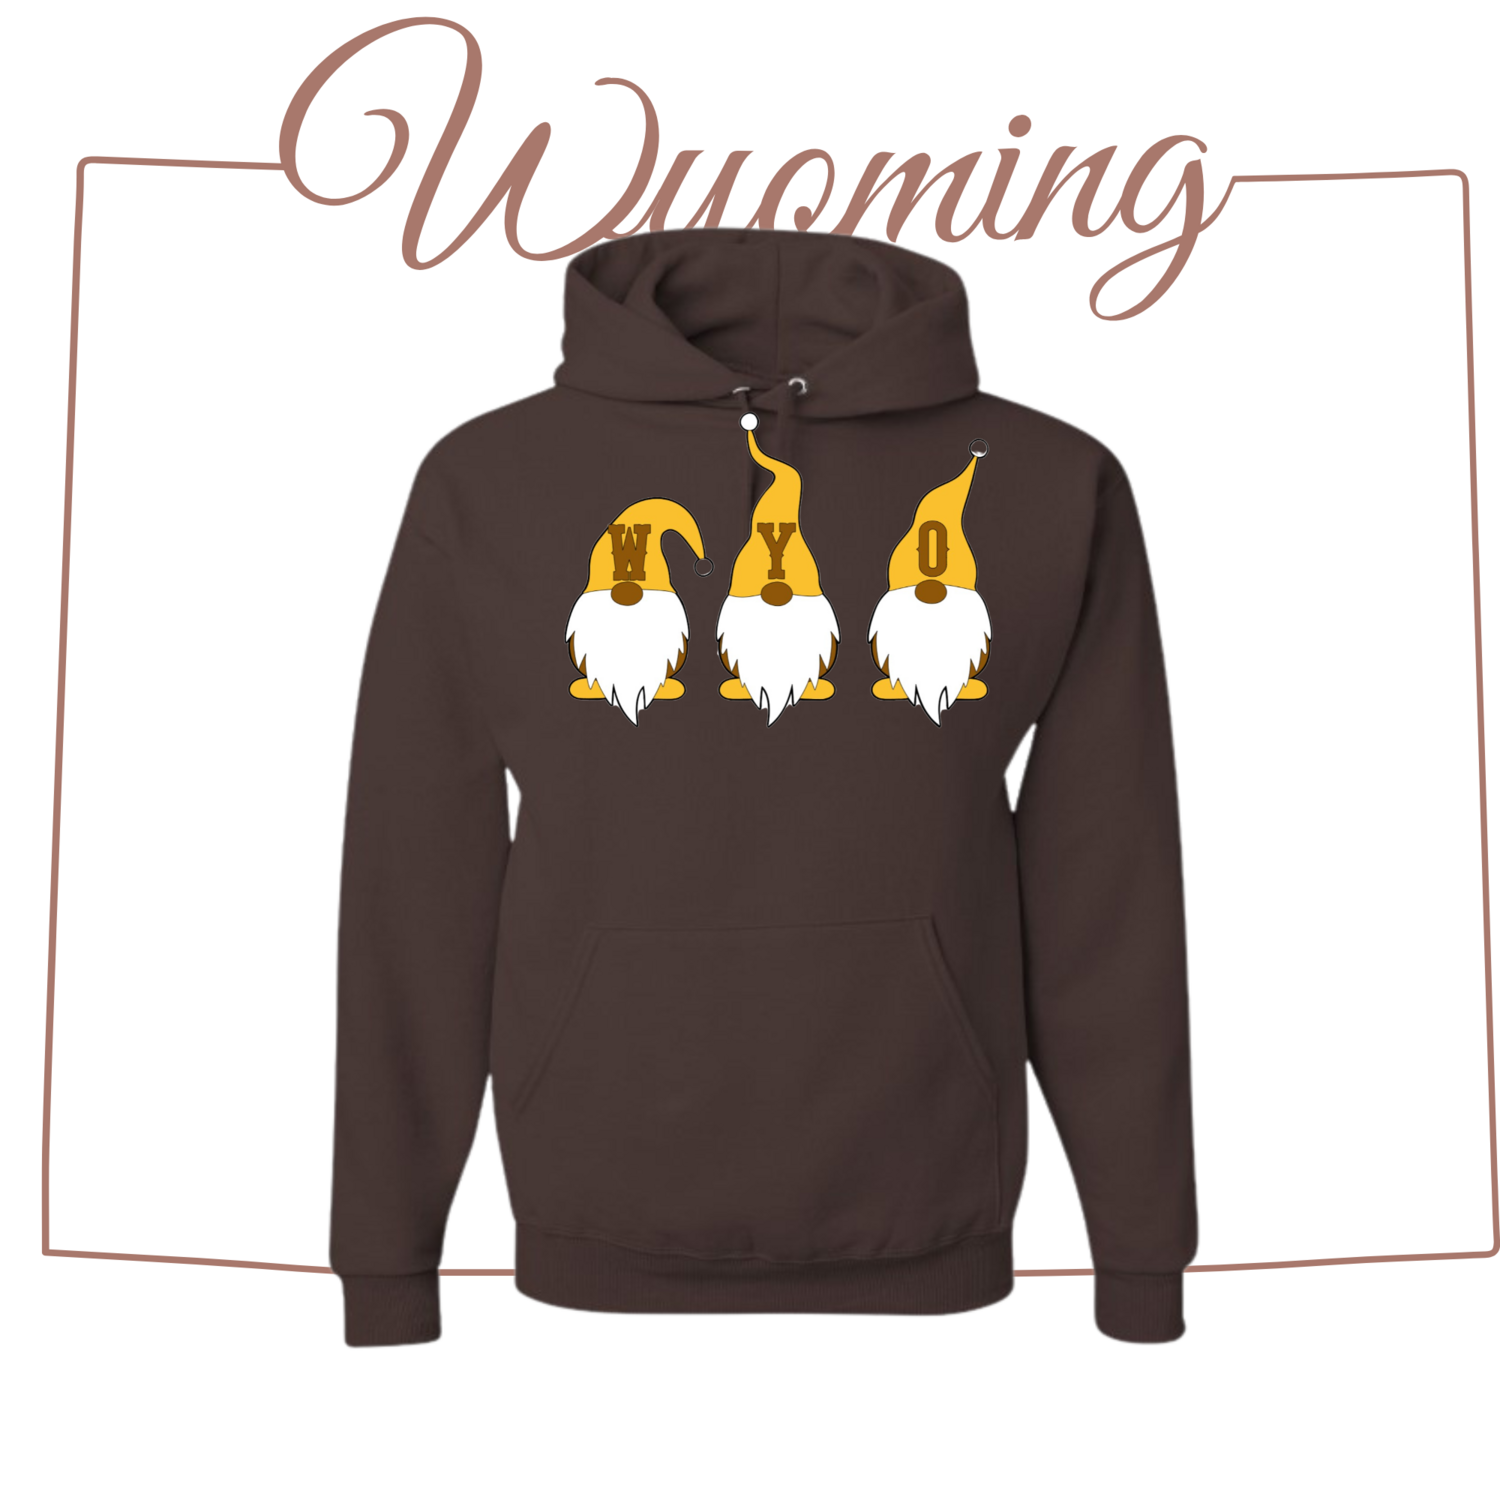 Wyoming Gnome Sweatshirt